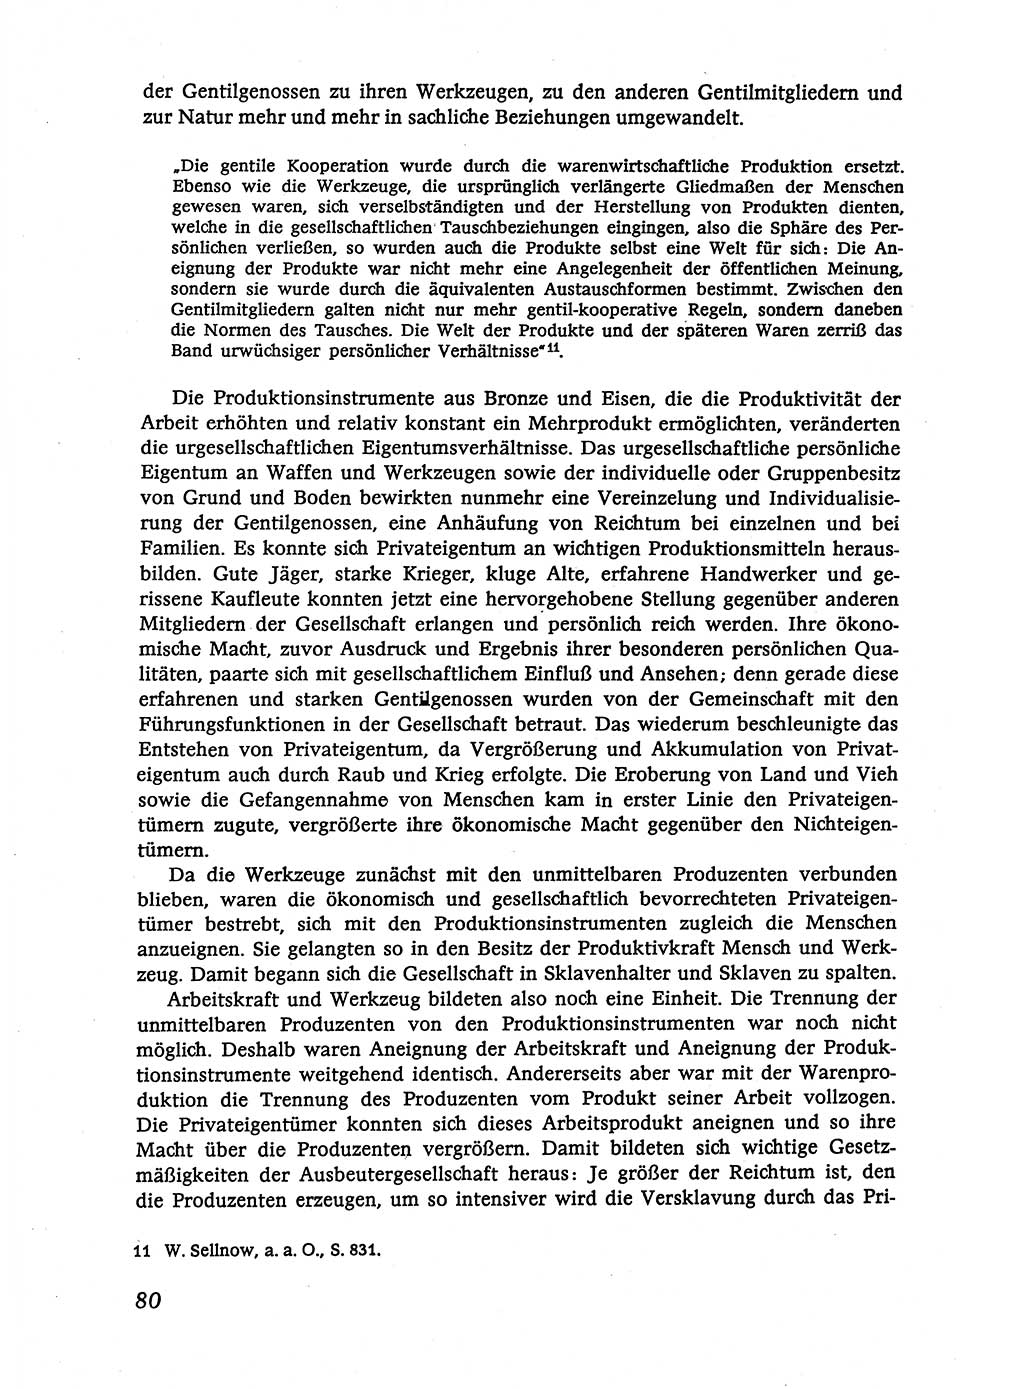 Marxistisch-leninistische (ML) Staats- und Rechtstheorie [Deutsche Demokratische Republik (DDR)], Lehrbuch 1980, Seite 80 (ML St.-R.-Th. DDR Lb. 1980, S. 80)